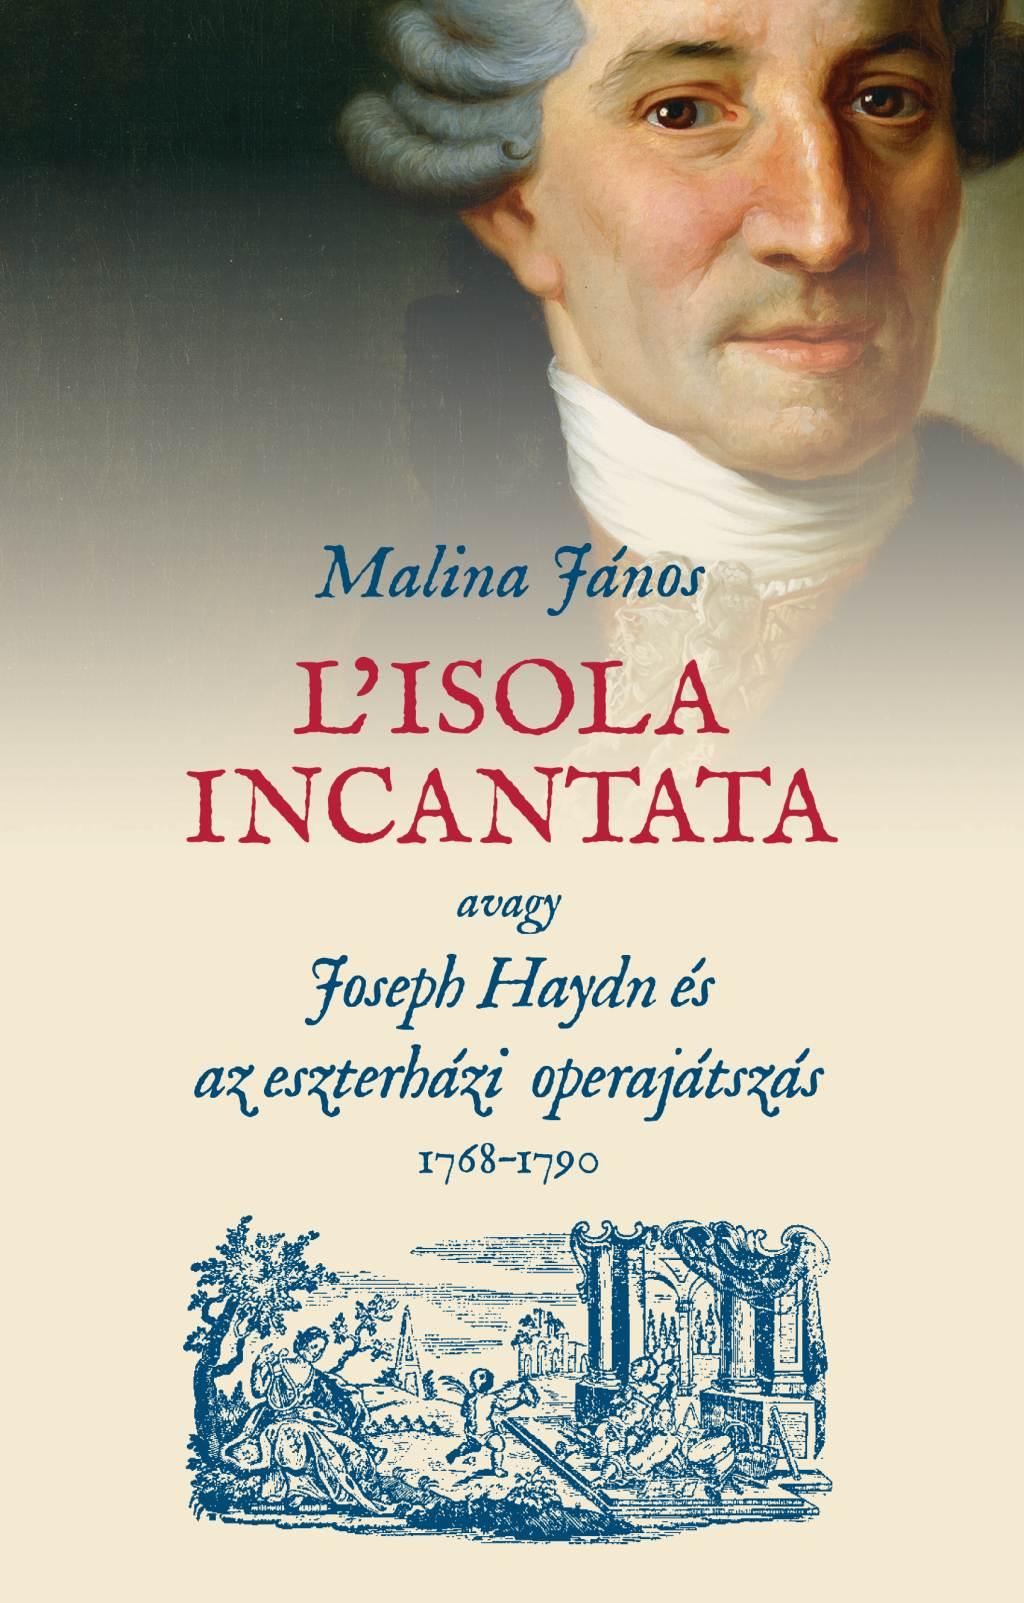 Malina János - L'isola incantata, avagy Joseph Haydn és az eszterházi operajátszás 1768-1790